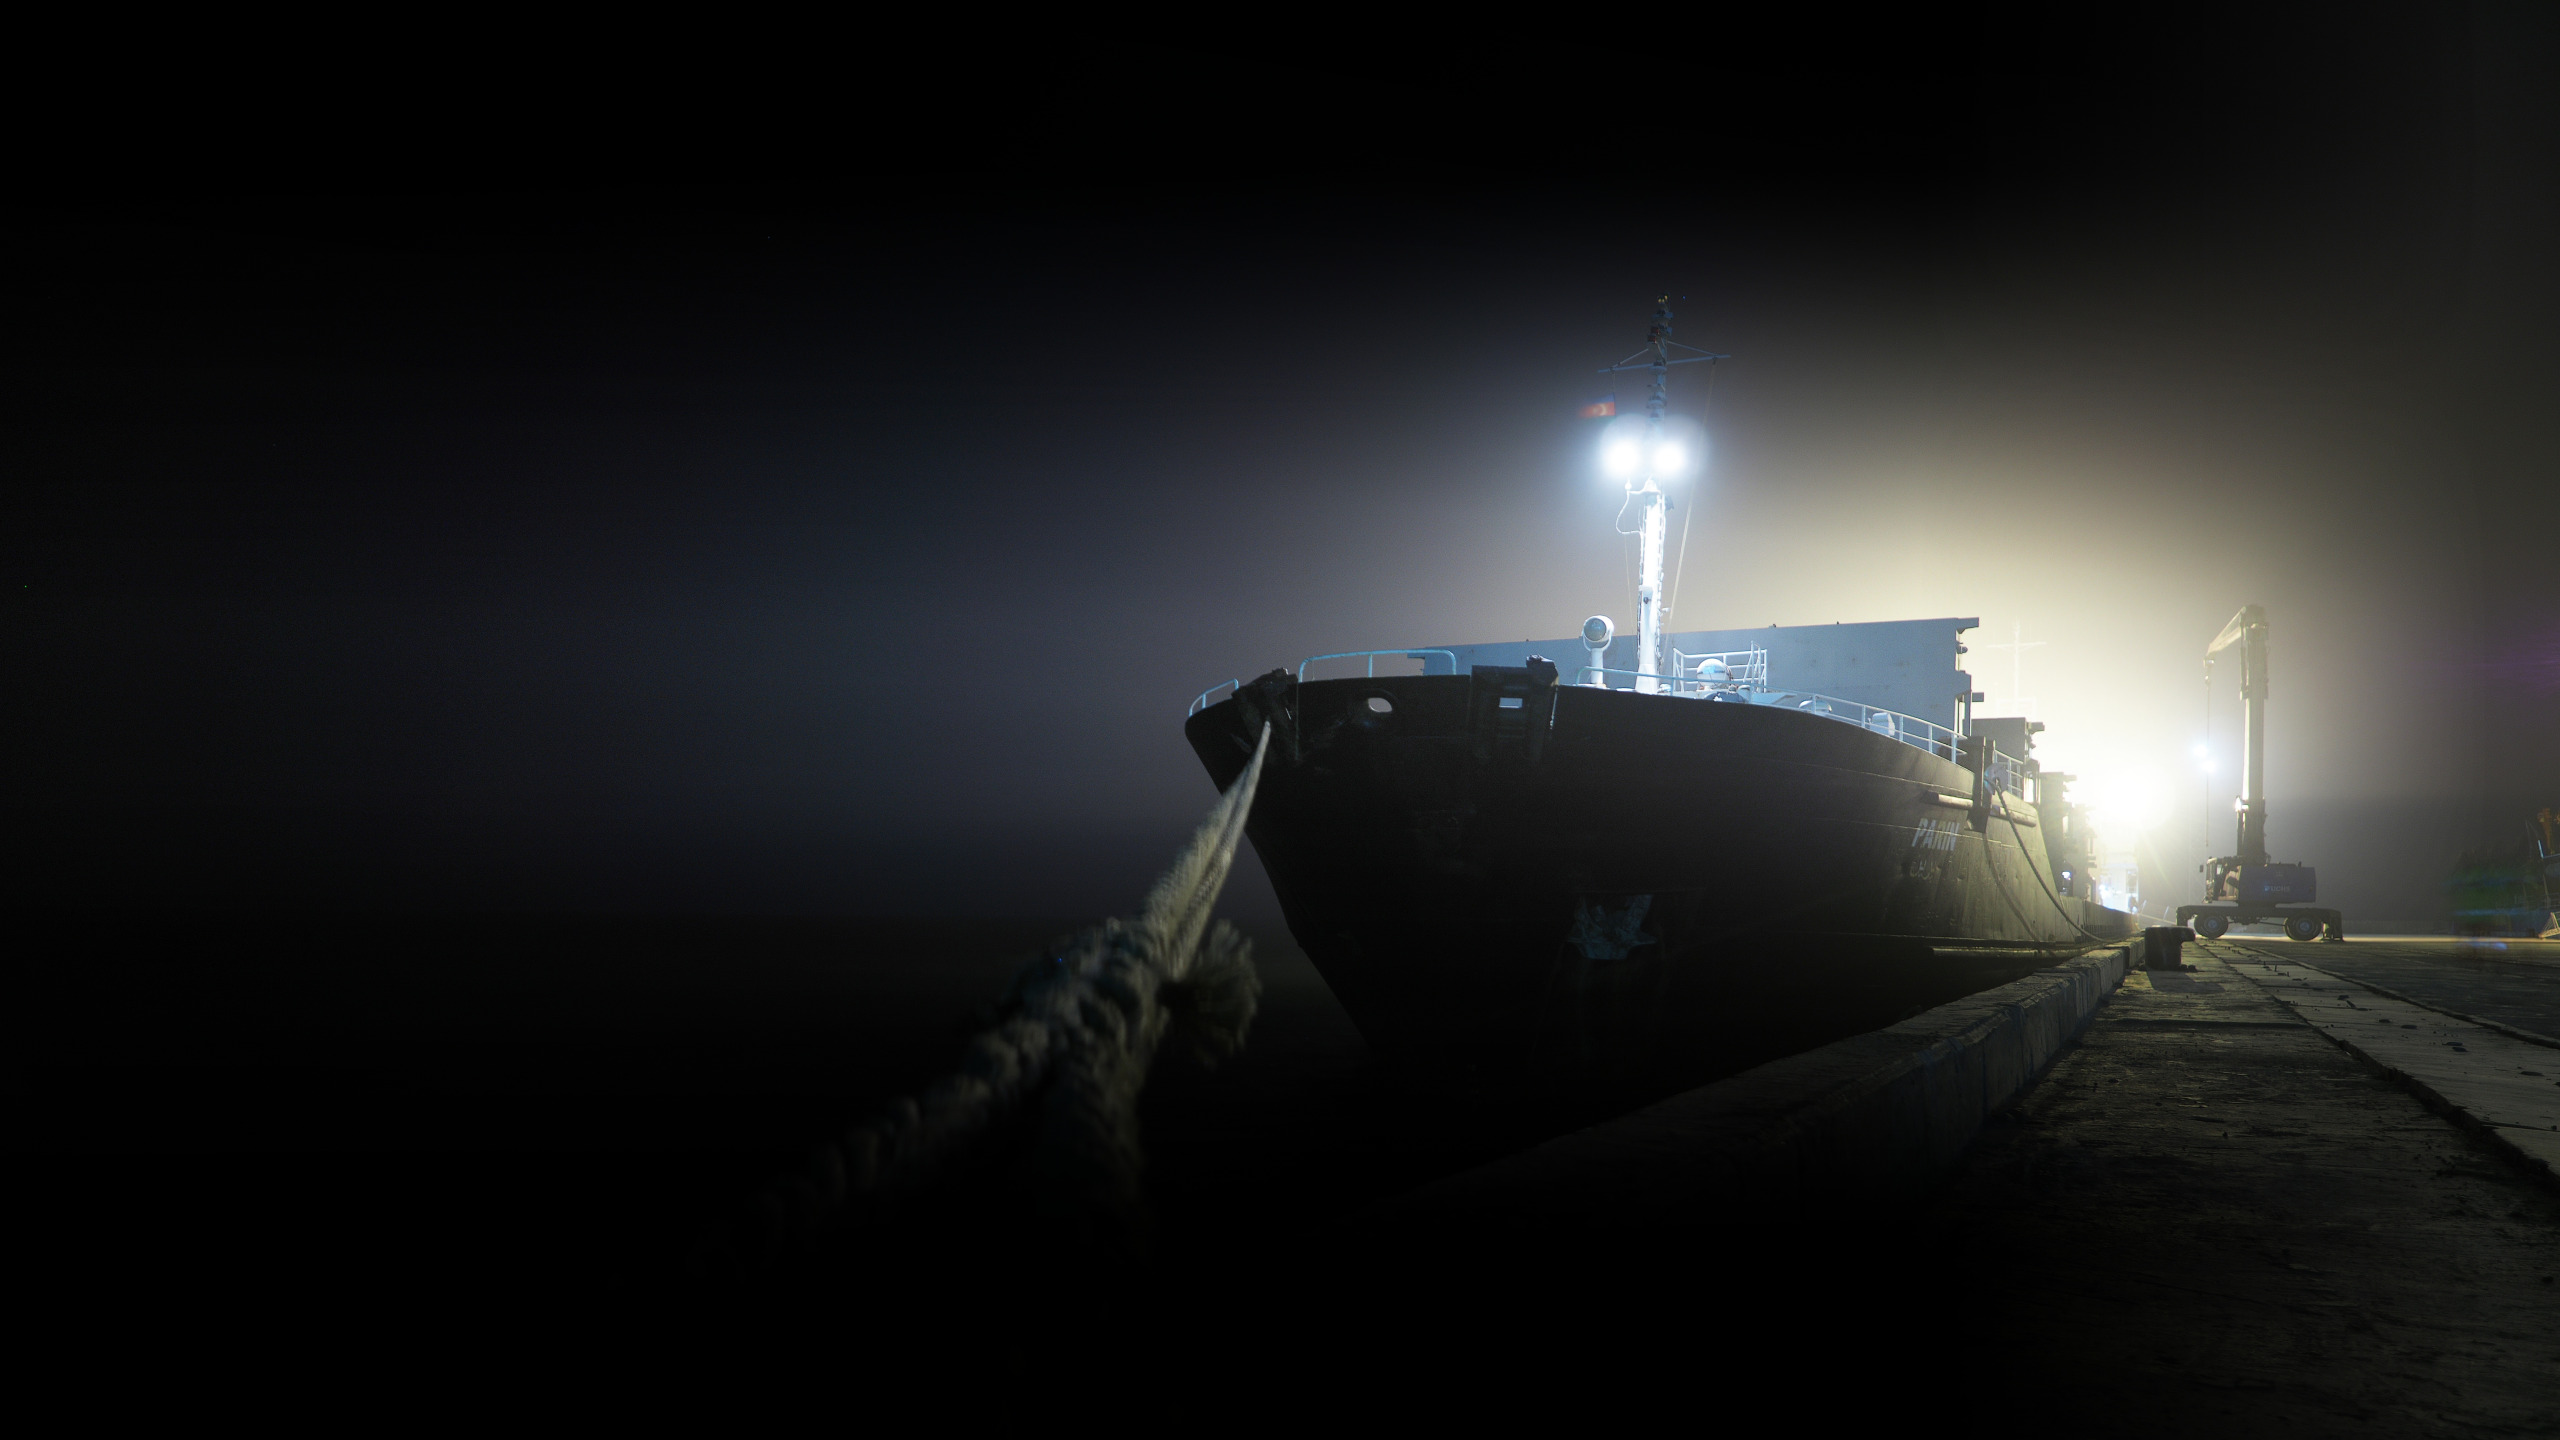 Порт дарк. Ночь на корабле. Военный корабль в тумане. Корабль в темноте. Военный корабль ночью в море.